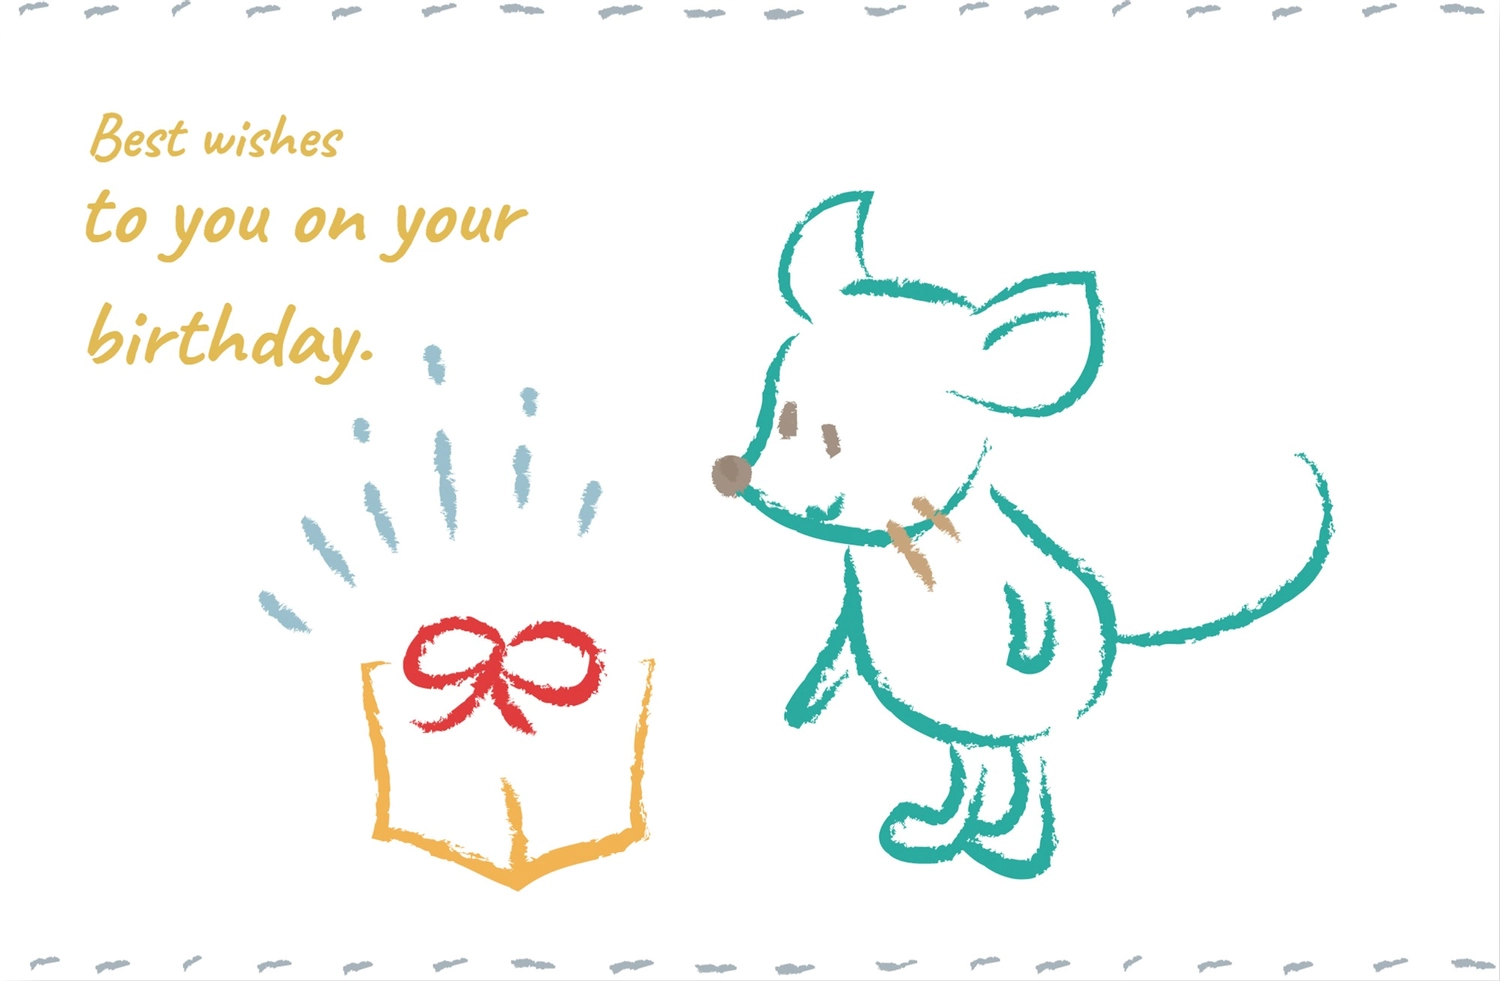 ネズミの誕生日カード, 이벤트, 만들기, 편집, 생일 카드 템플릿